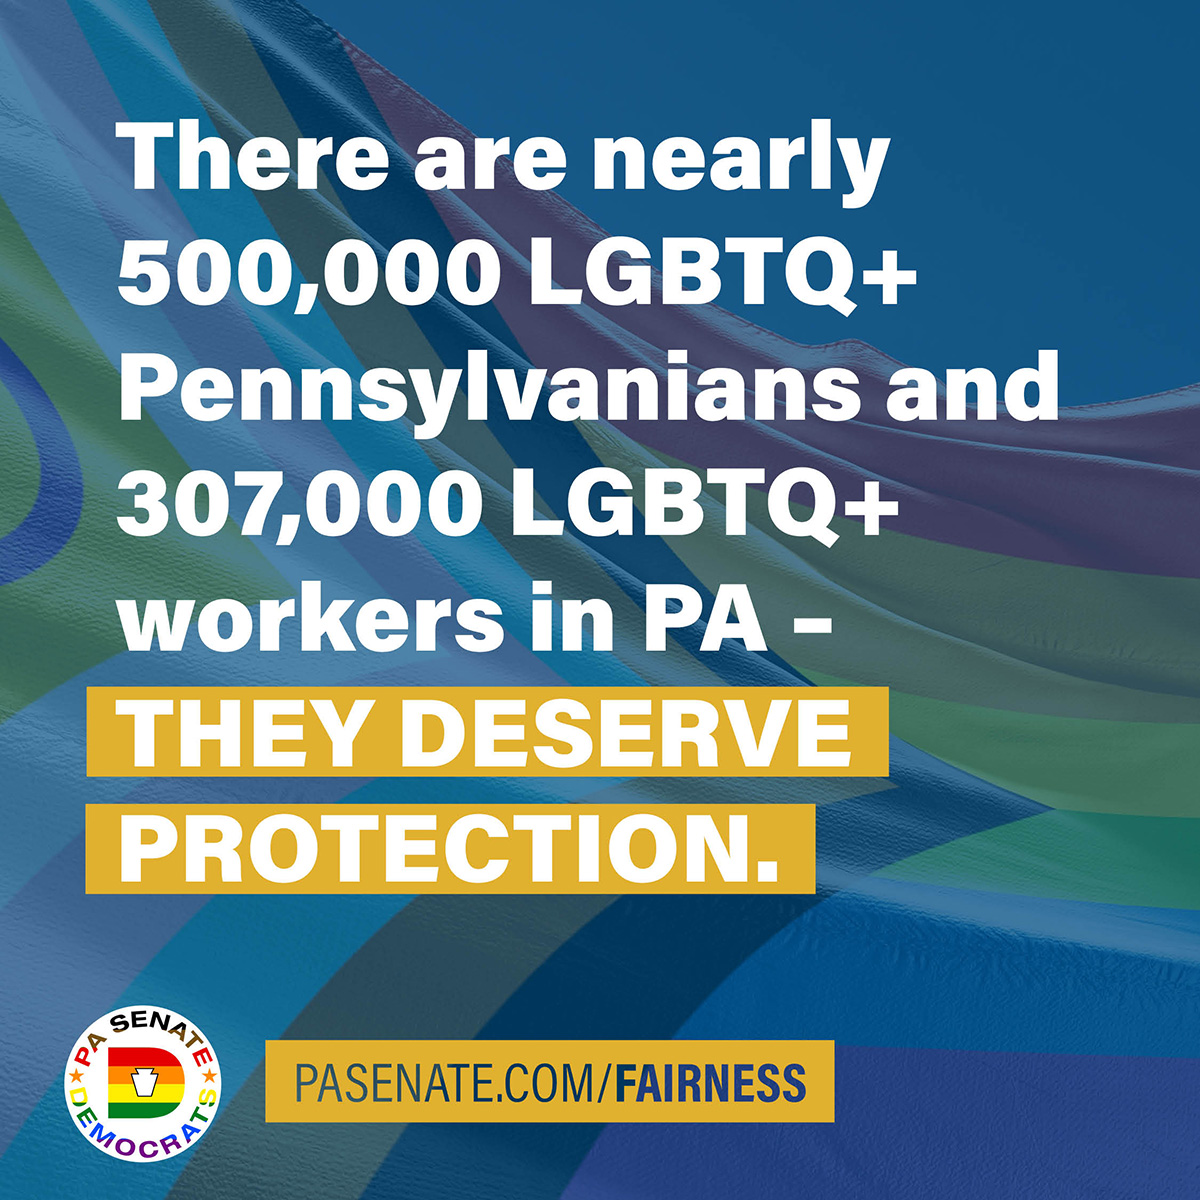 Hay casi 500.000 LGBTQ + Pennsylvanians y 307.000 trabajadores LGBTQ + en PA - MERECEN PROTECCIÓN.